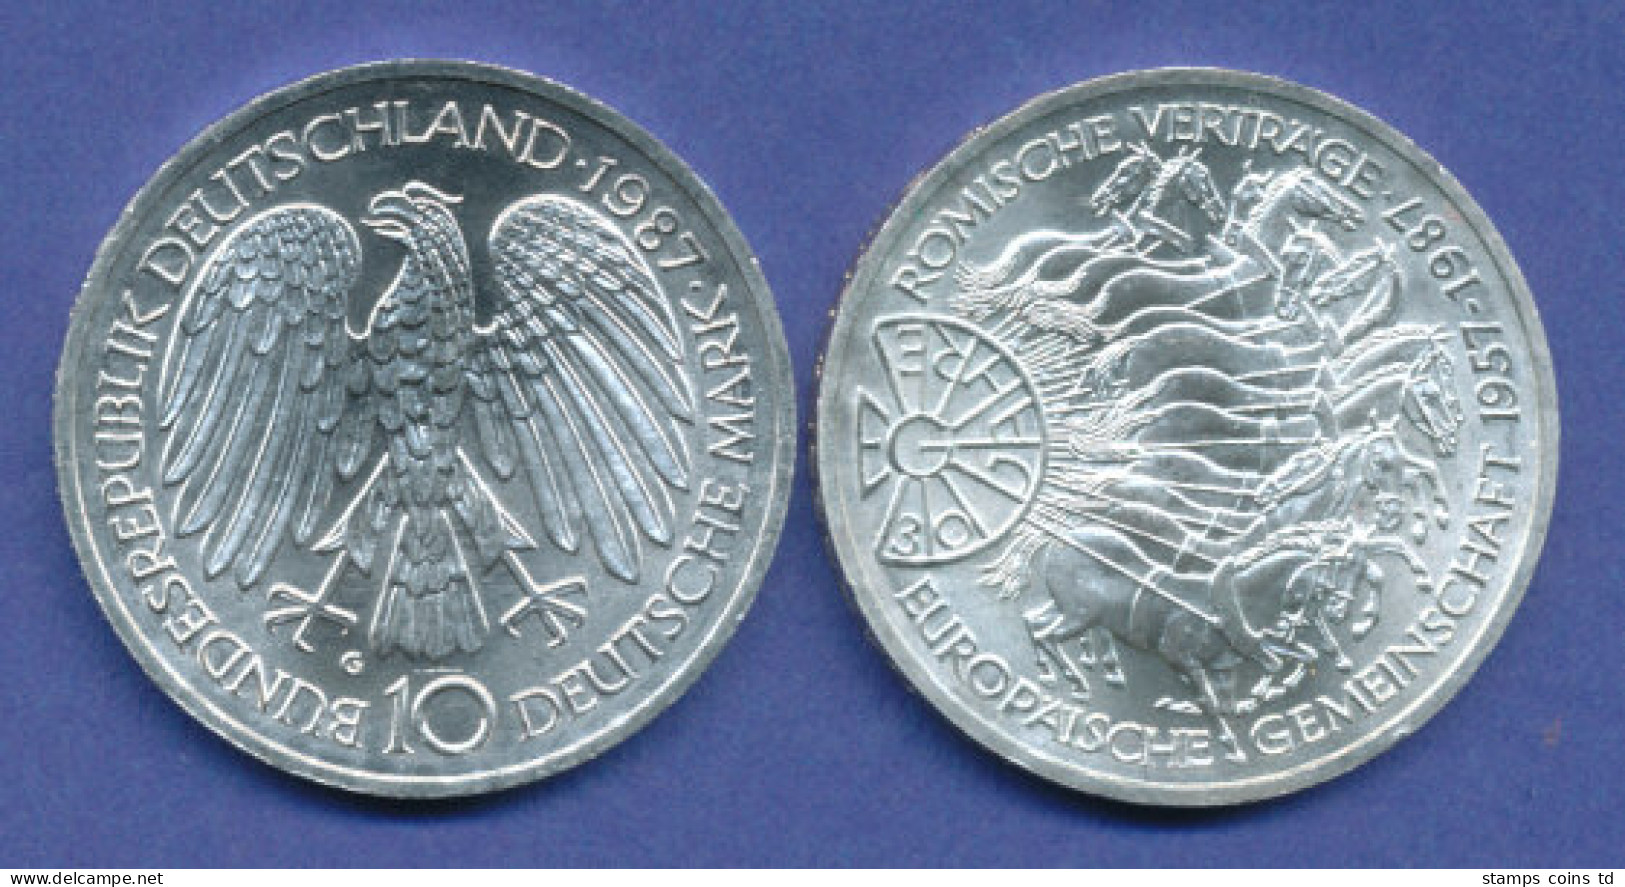 Bundesrepublik 10DM Silber-Gedenkmünze 1987, 30 Jahre EG - 10 Mark